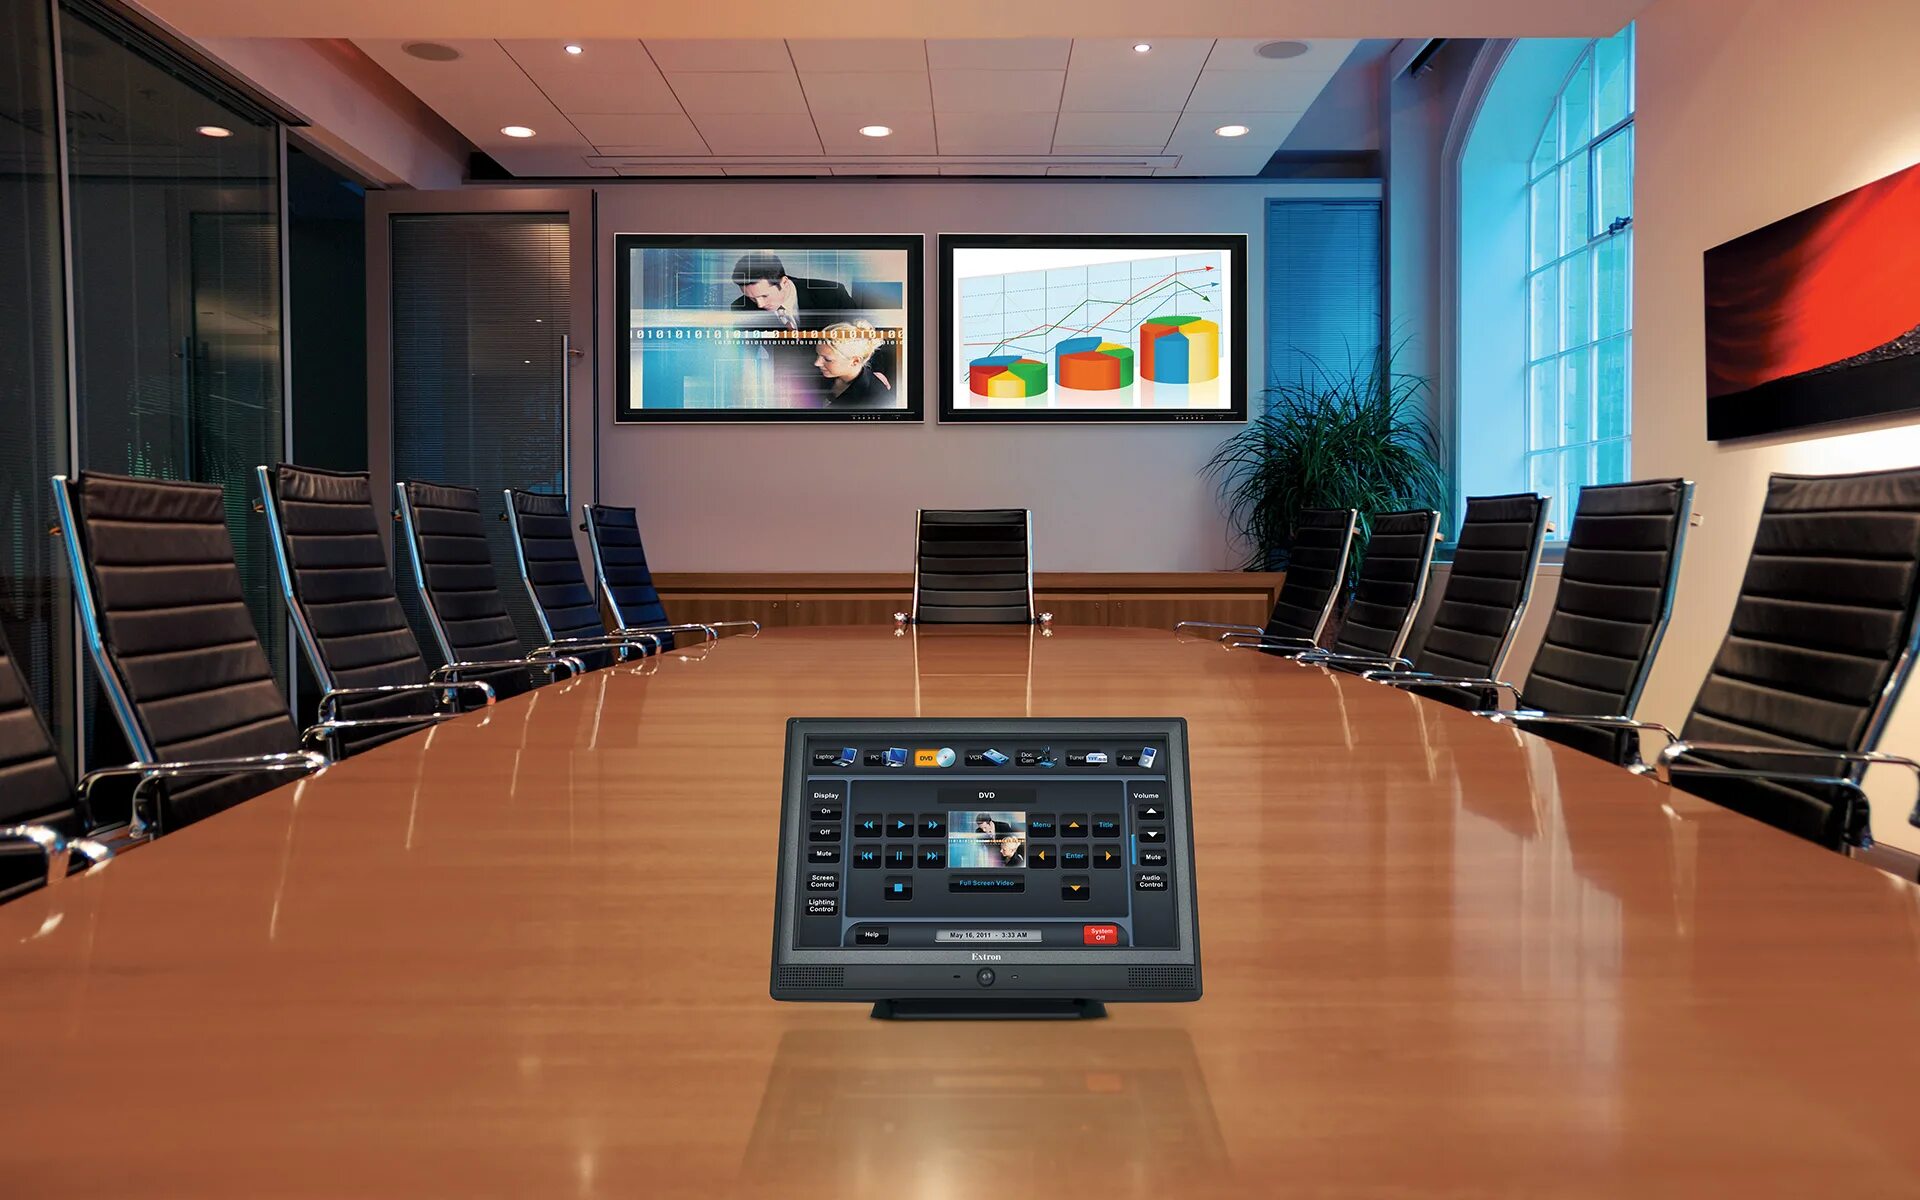 Show contact. Мониторы для конференц залов. Зал для конференций. Мультимедийные системы для конференц залов. Экран в конференц зале.